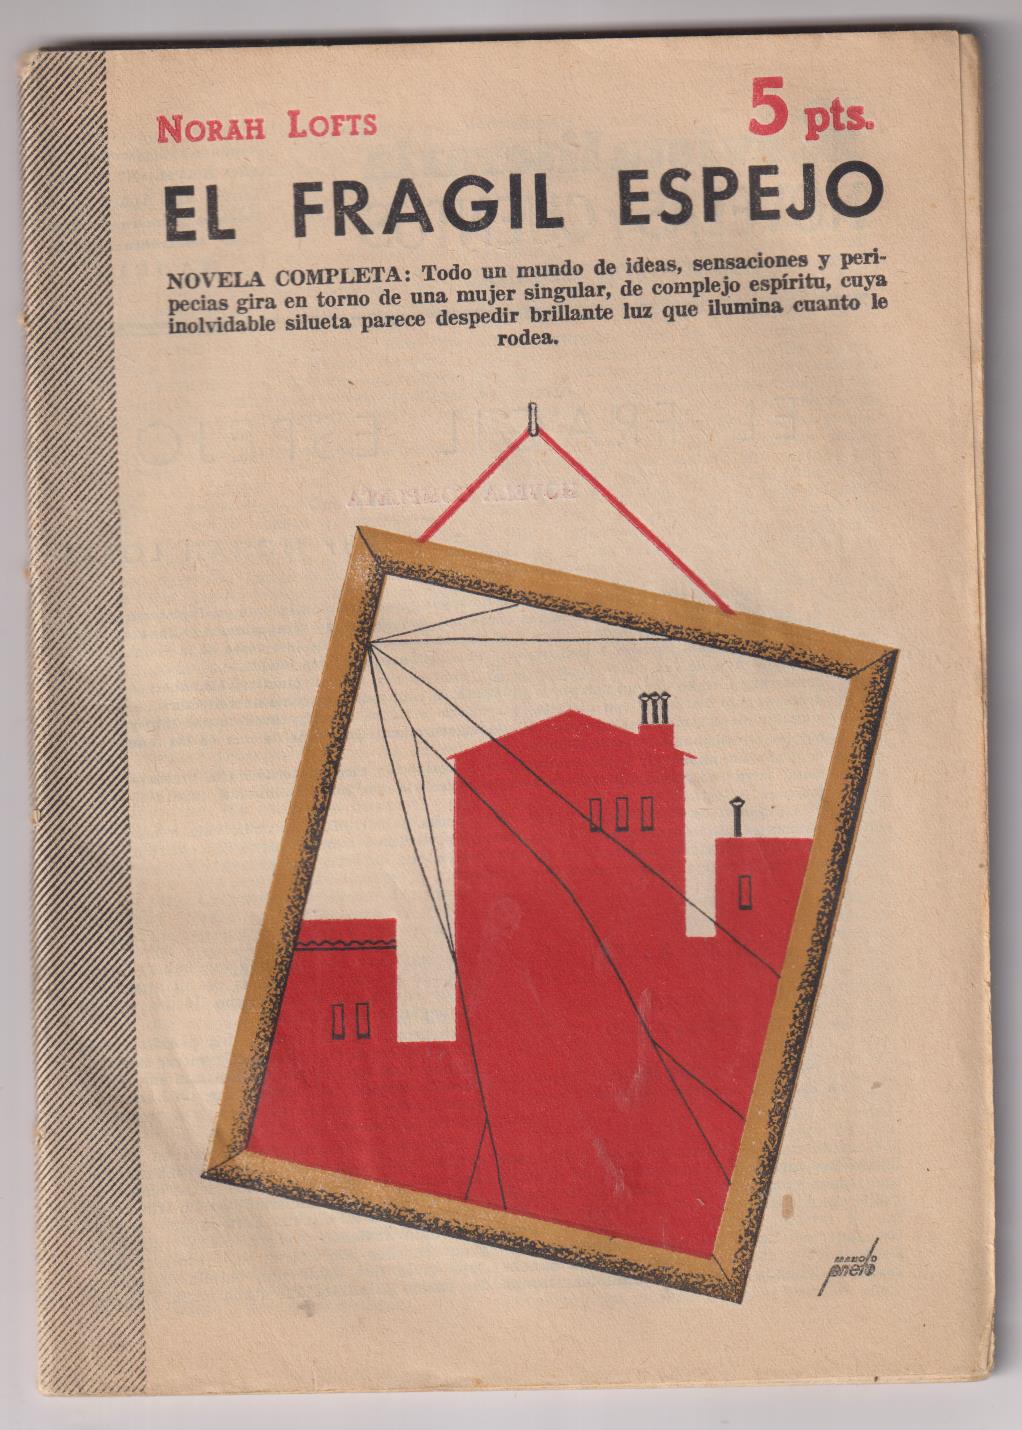 Revista Literaria Novelas y Cuentos nº 1271. Nora Lofts. El frágil espejo. año 1955